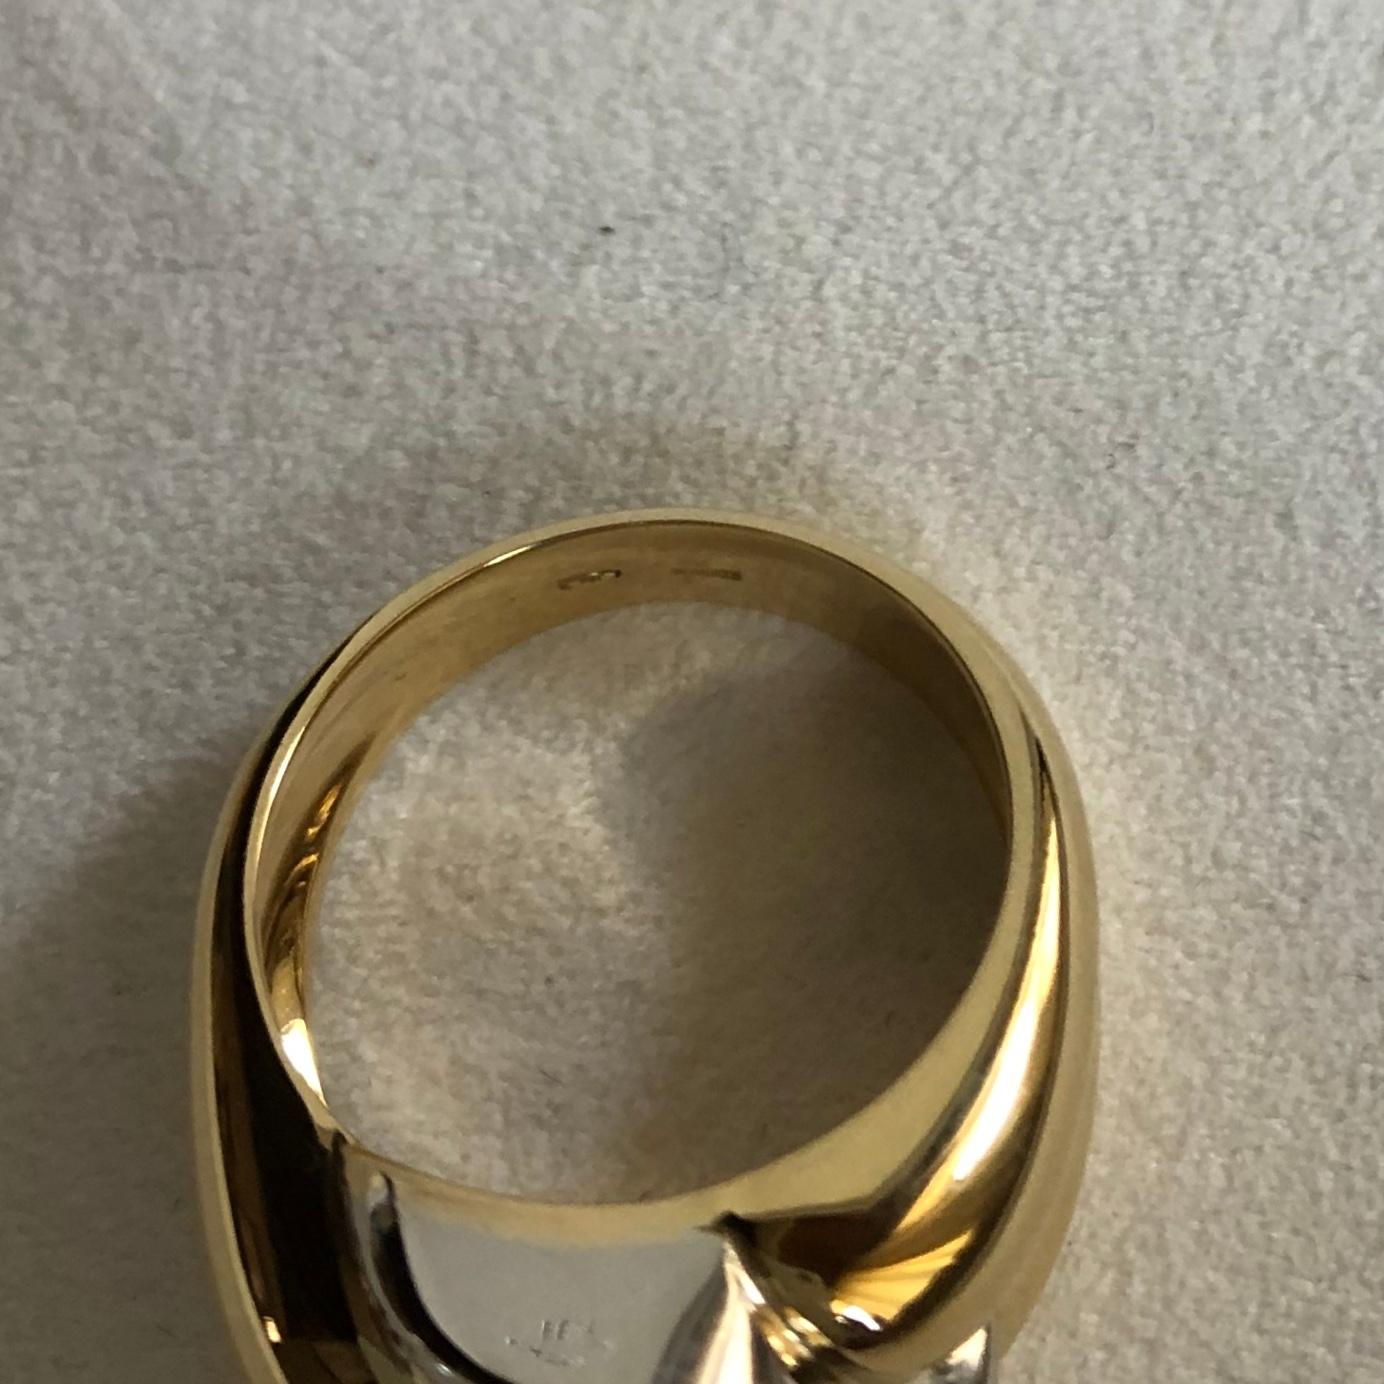  0.46 Carat Diamonds Ring on 18 Karat Yellow and White Gold 1